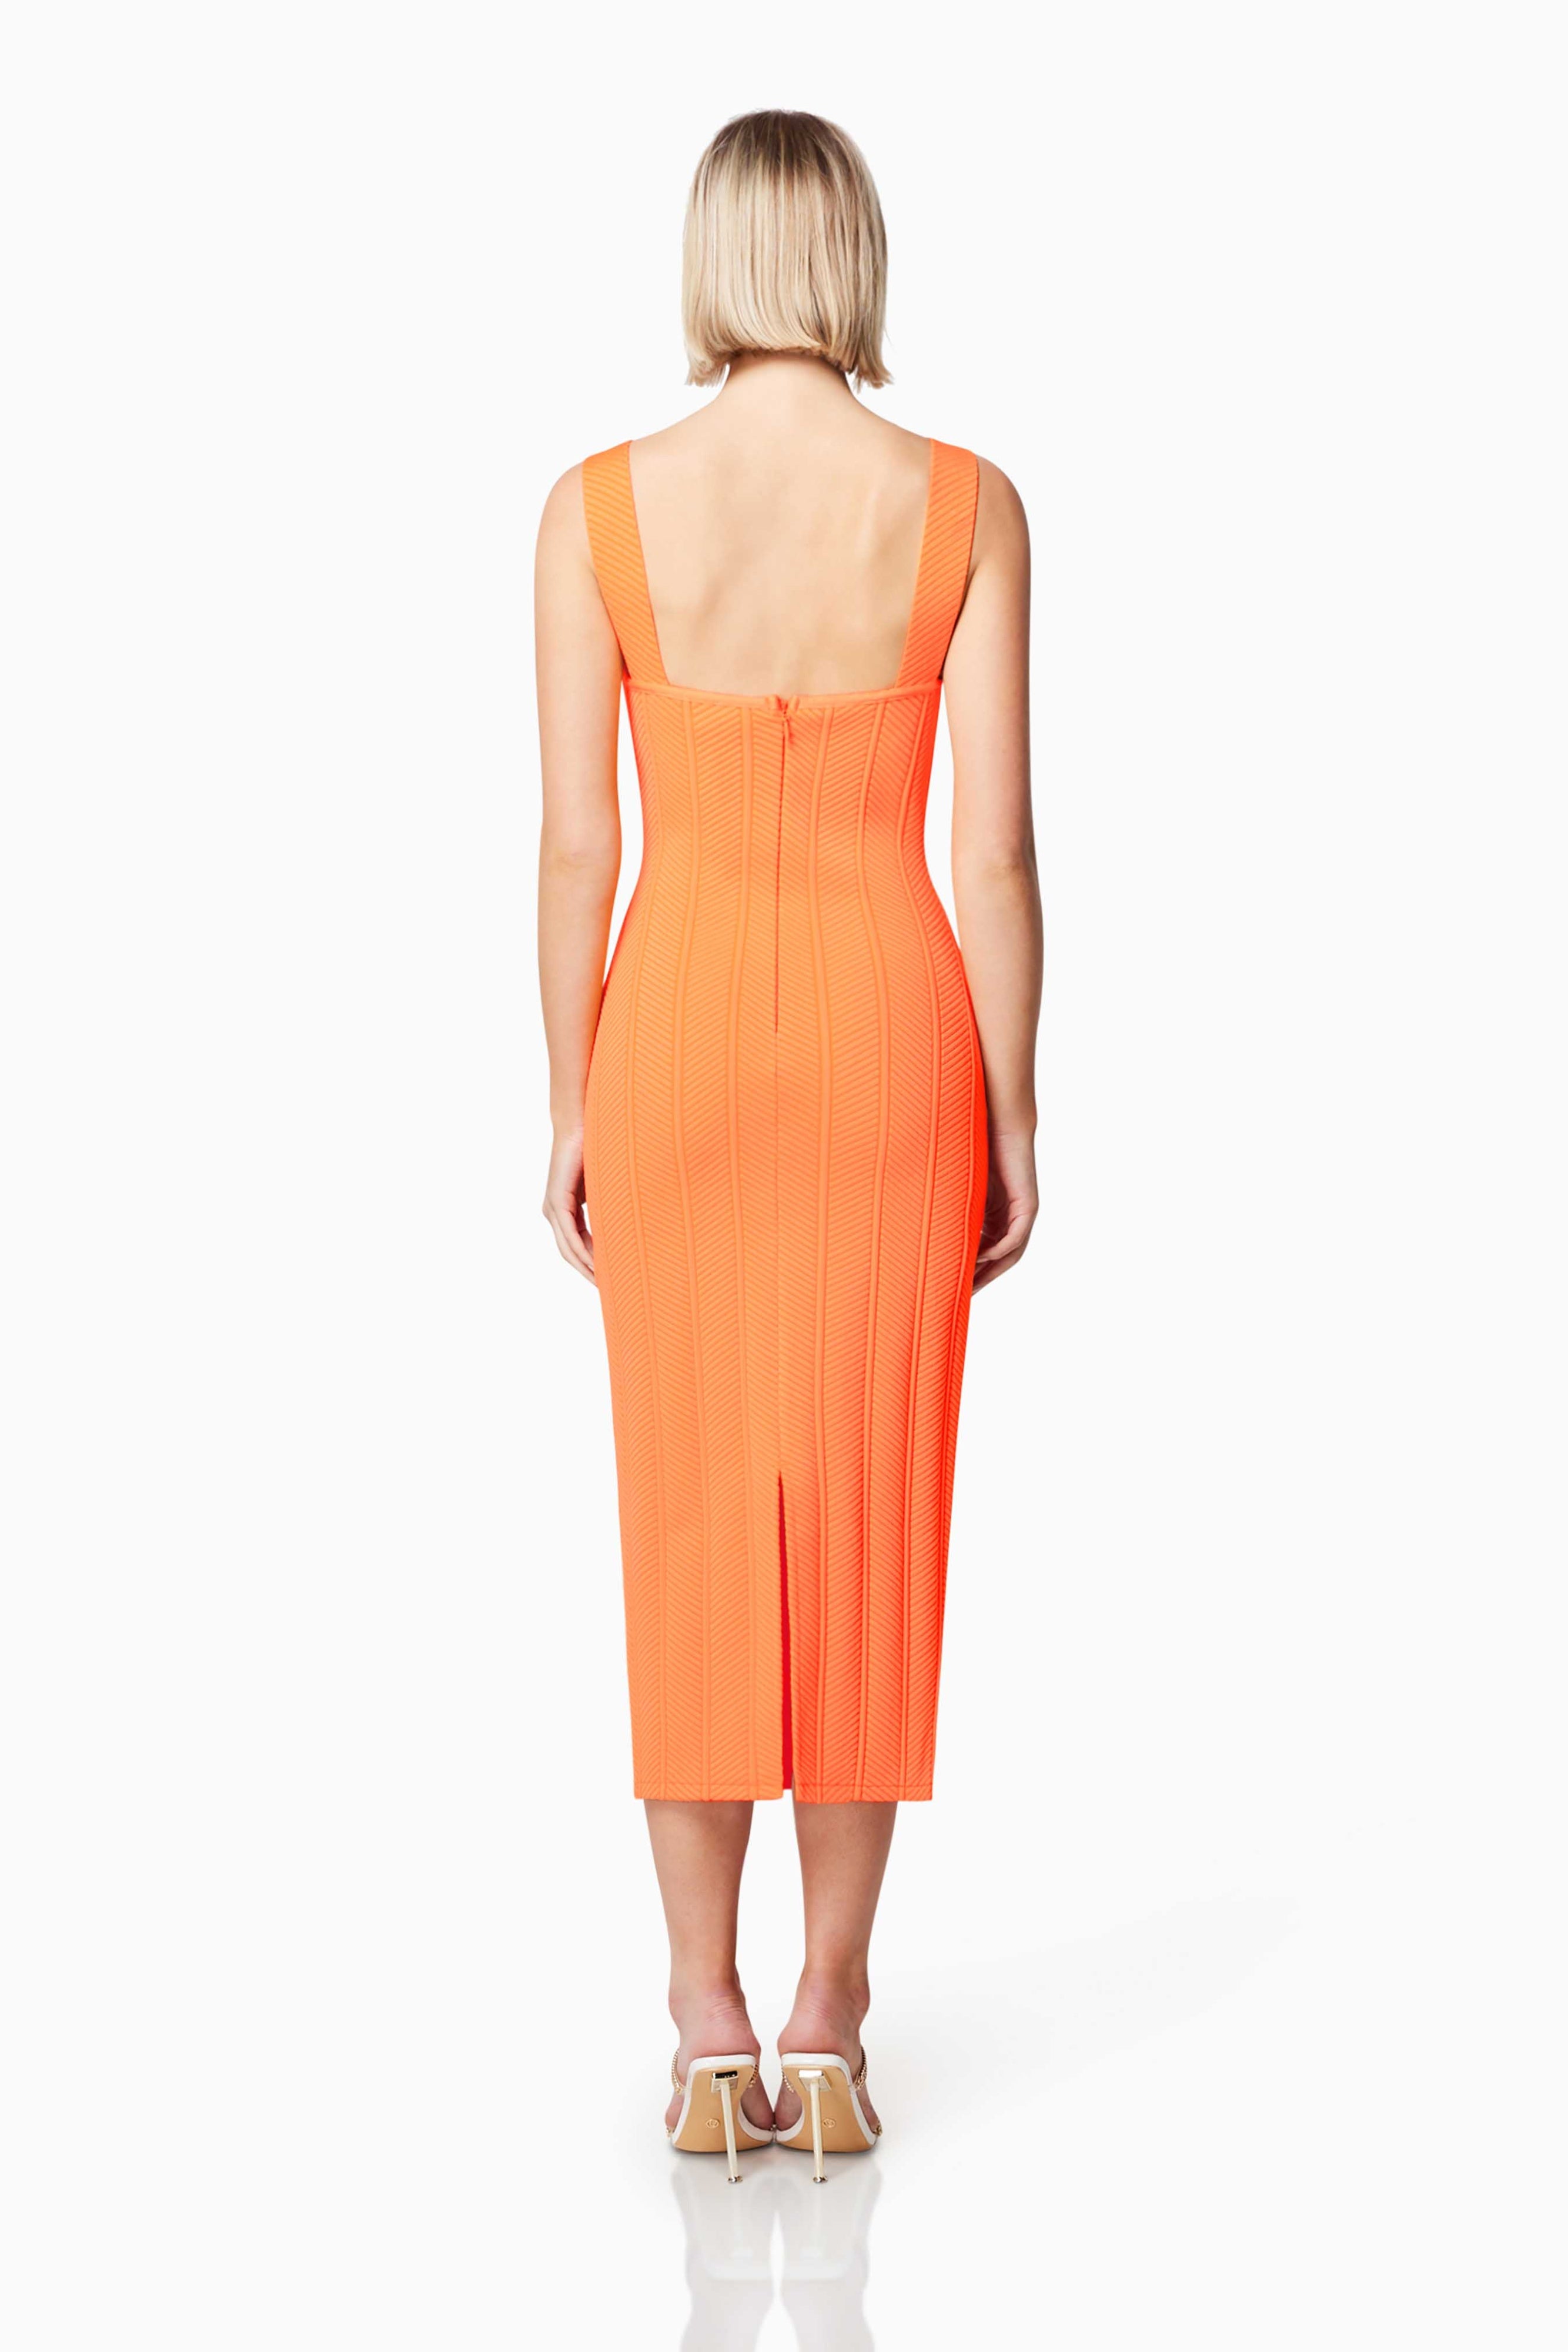 Sterling Dress in Neon Orange